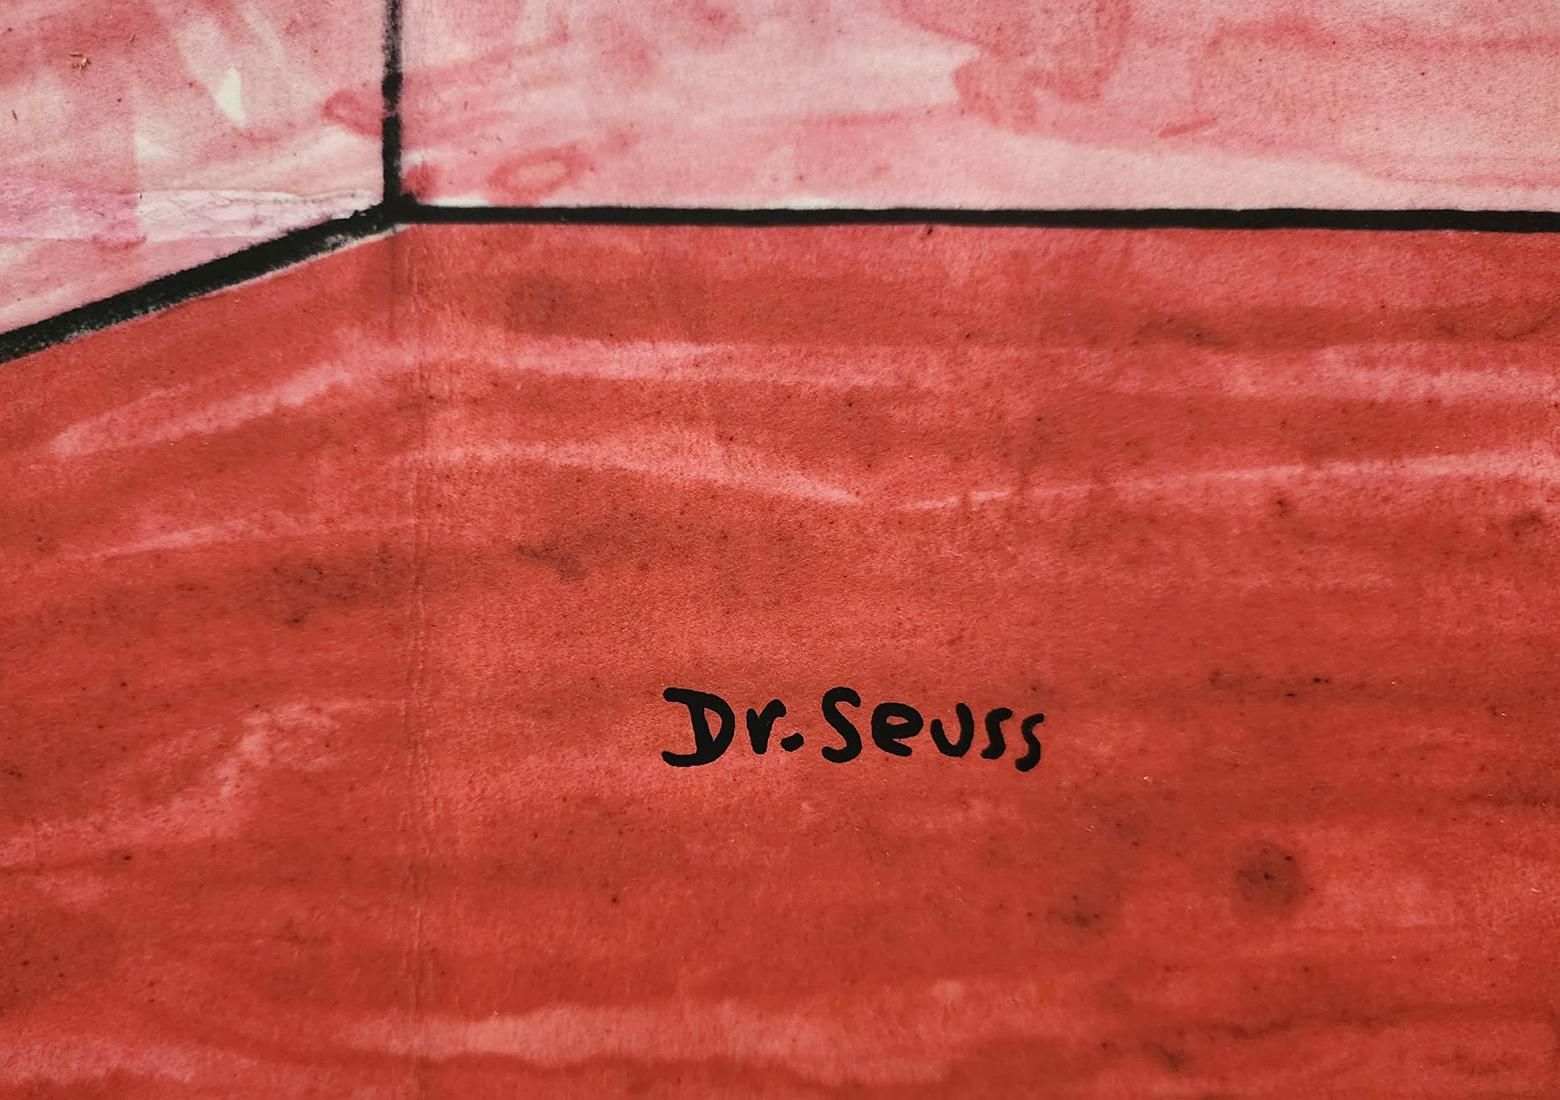 DR. SEUSS 'LE CHAT 60E ANNIVERSAIRE' 2017, SIGNÉ & NUMÉROTÉ, RARE PC SOLD OUT. - Print de (after) Dr. Seuss (Theodore Geisel)